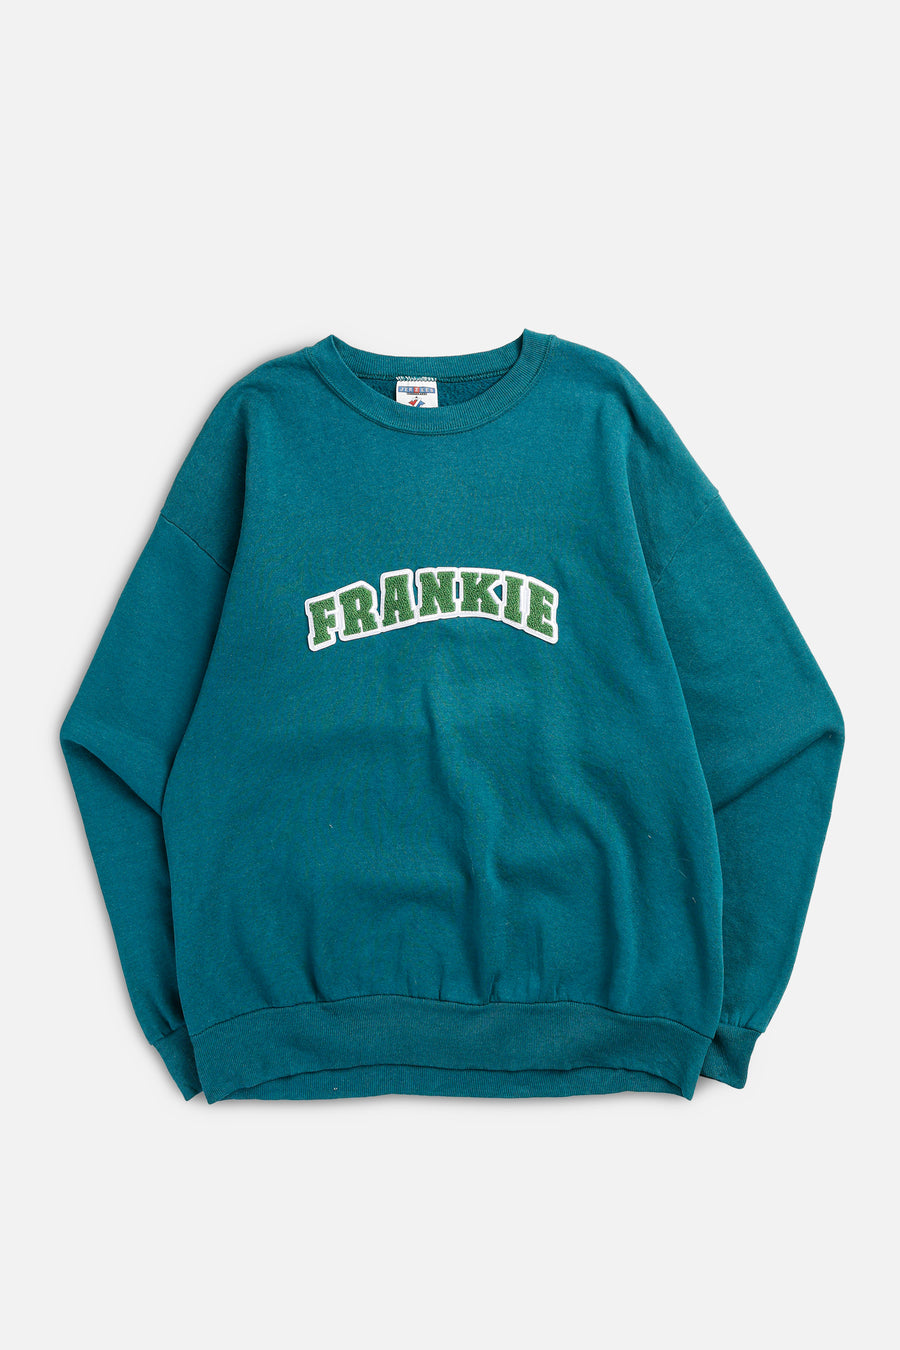 Frankie Upcycled Varsity Sweatshirt - S, L